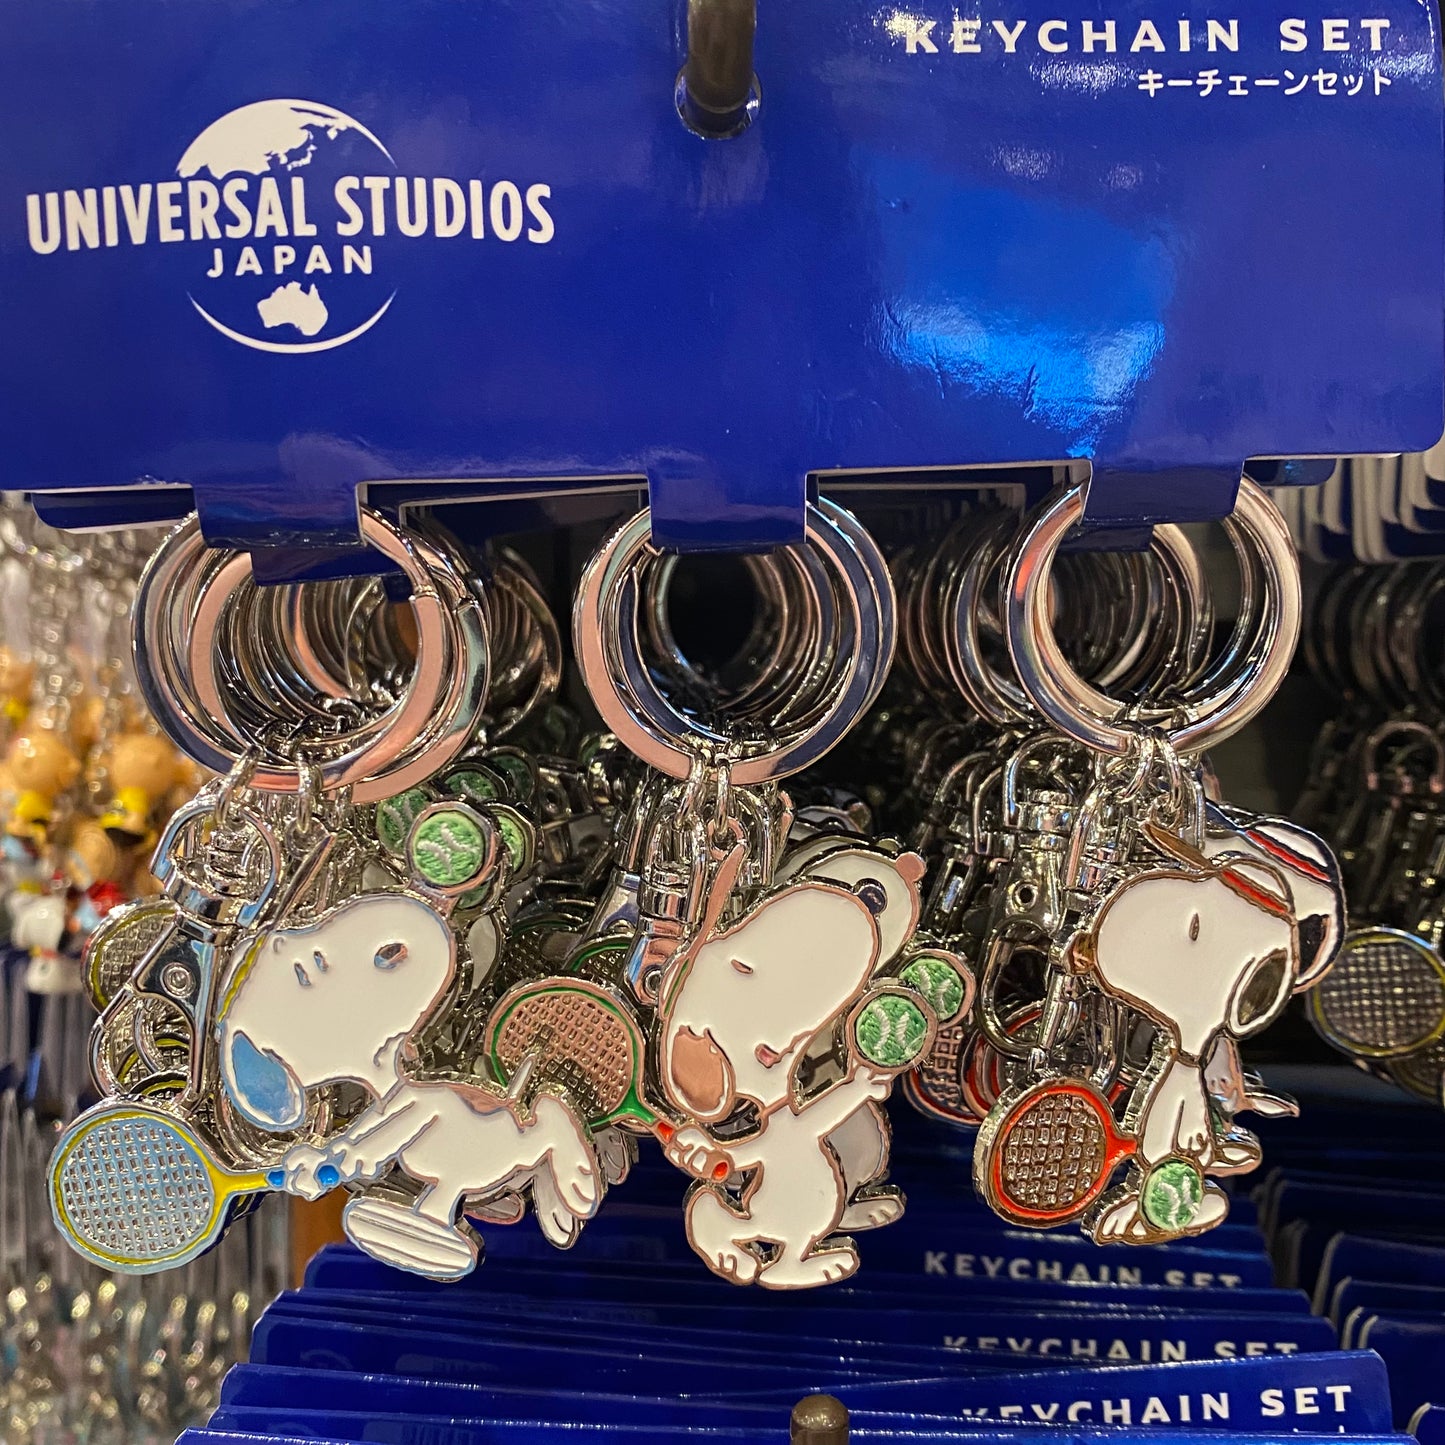 【訂貨】USJ Snoopy Sports Keychain Set